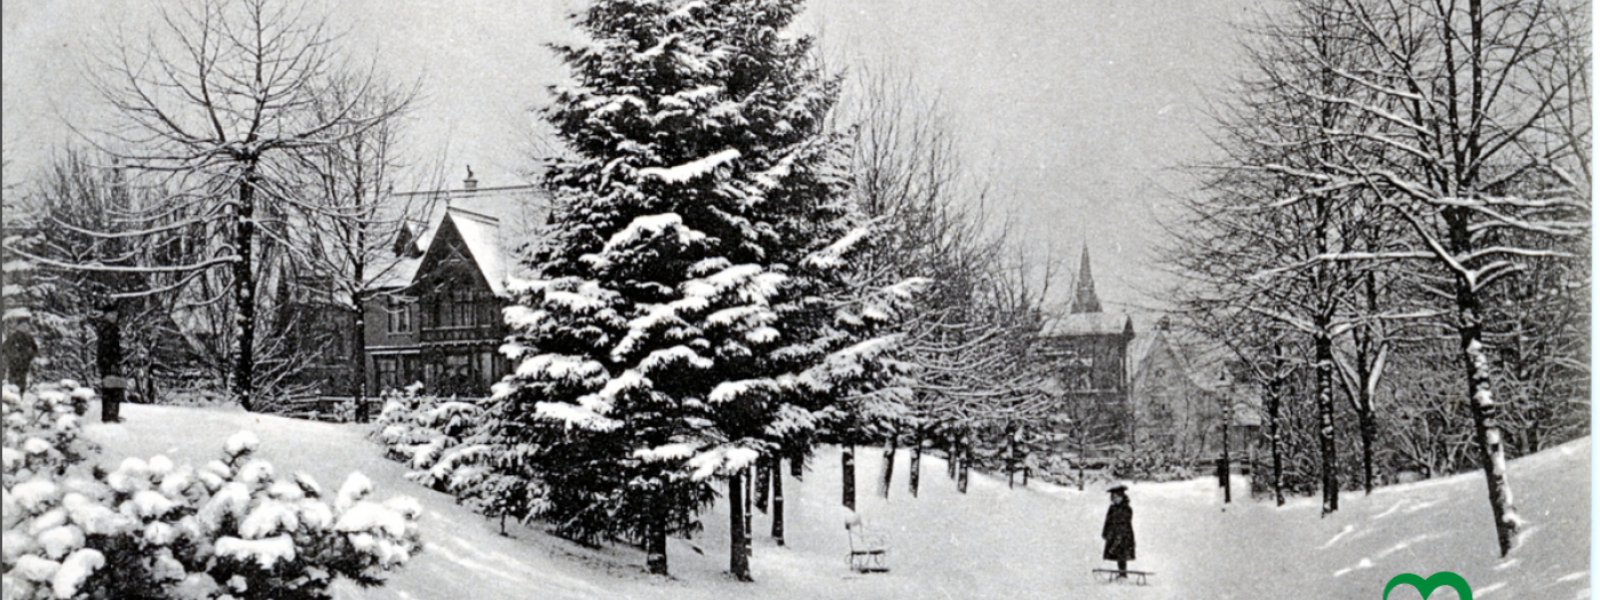 Vintermotiv fra Nygårdsparken, anno 1906